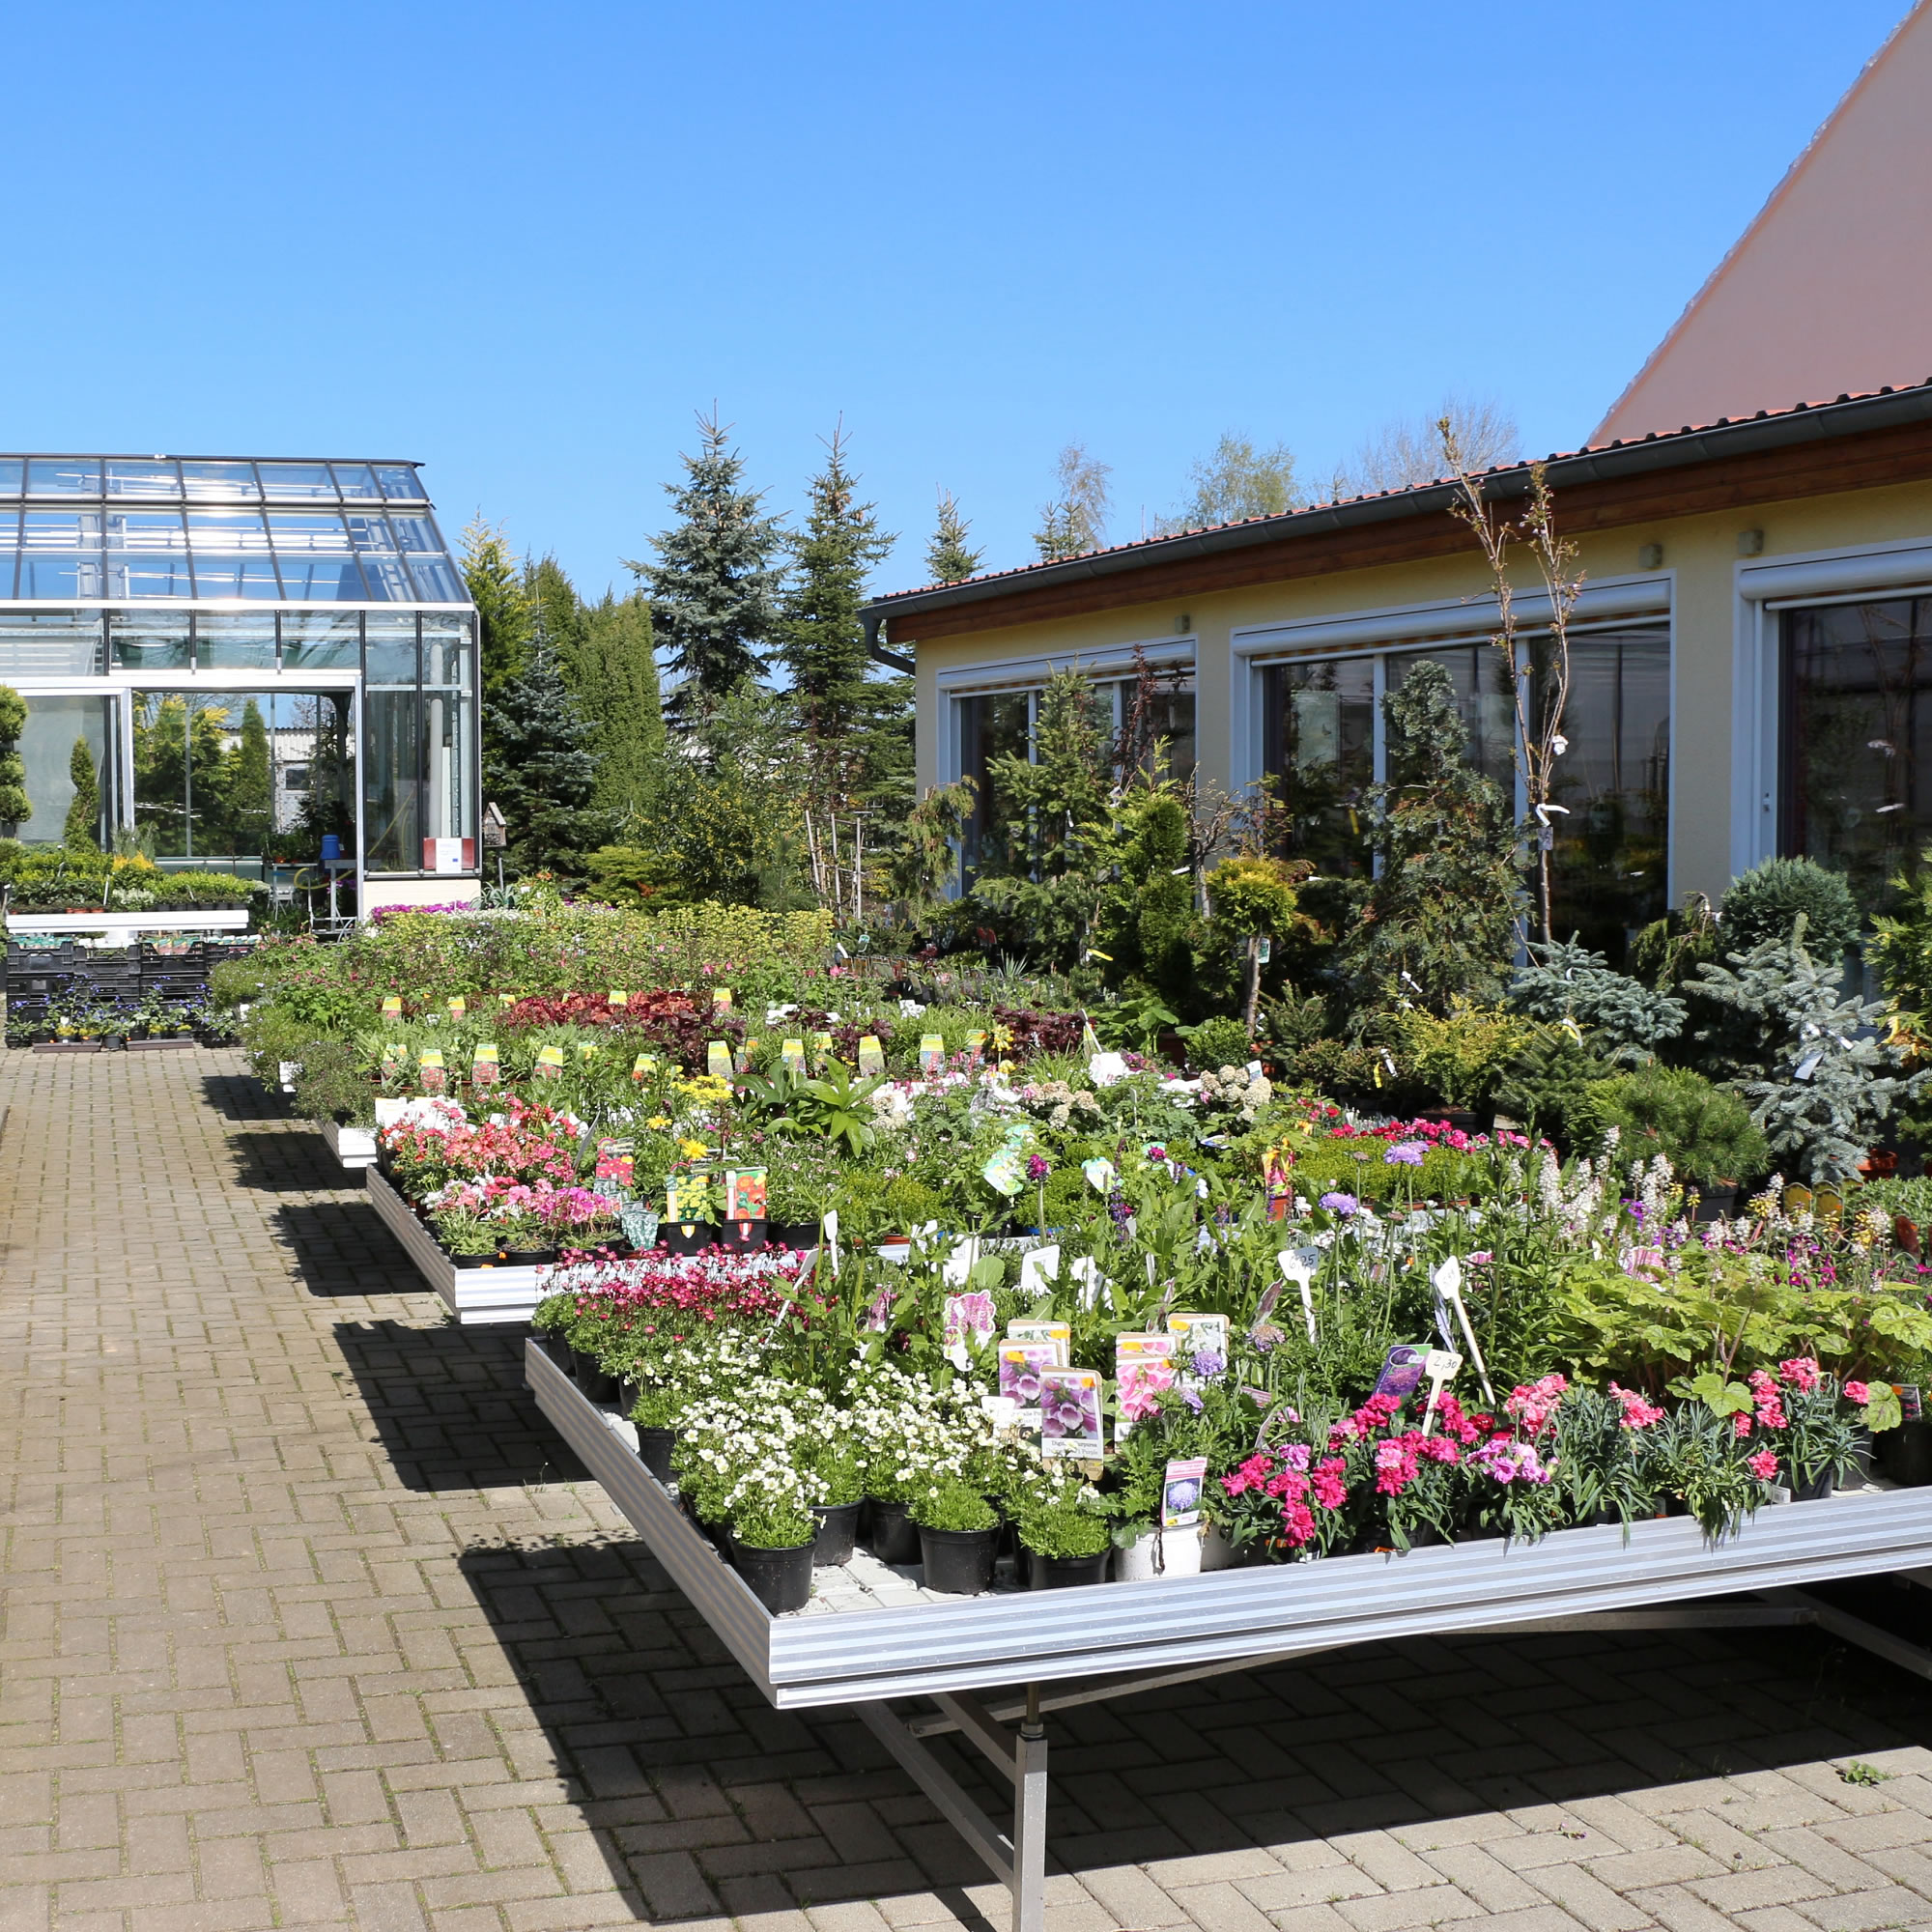 Gärtnerei & Pflanzenmarkt mit Garten- & Balkonpflanzen